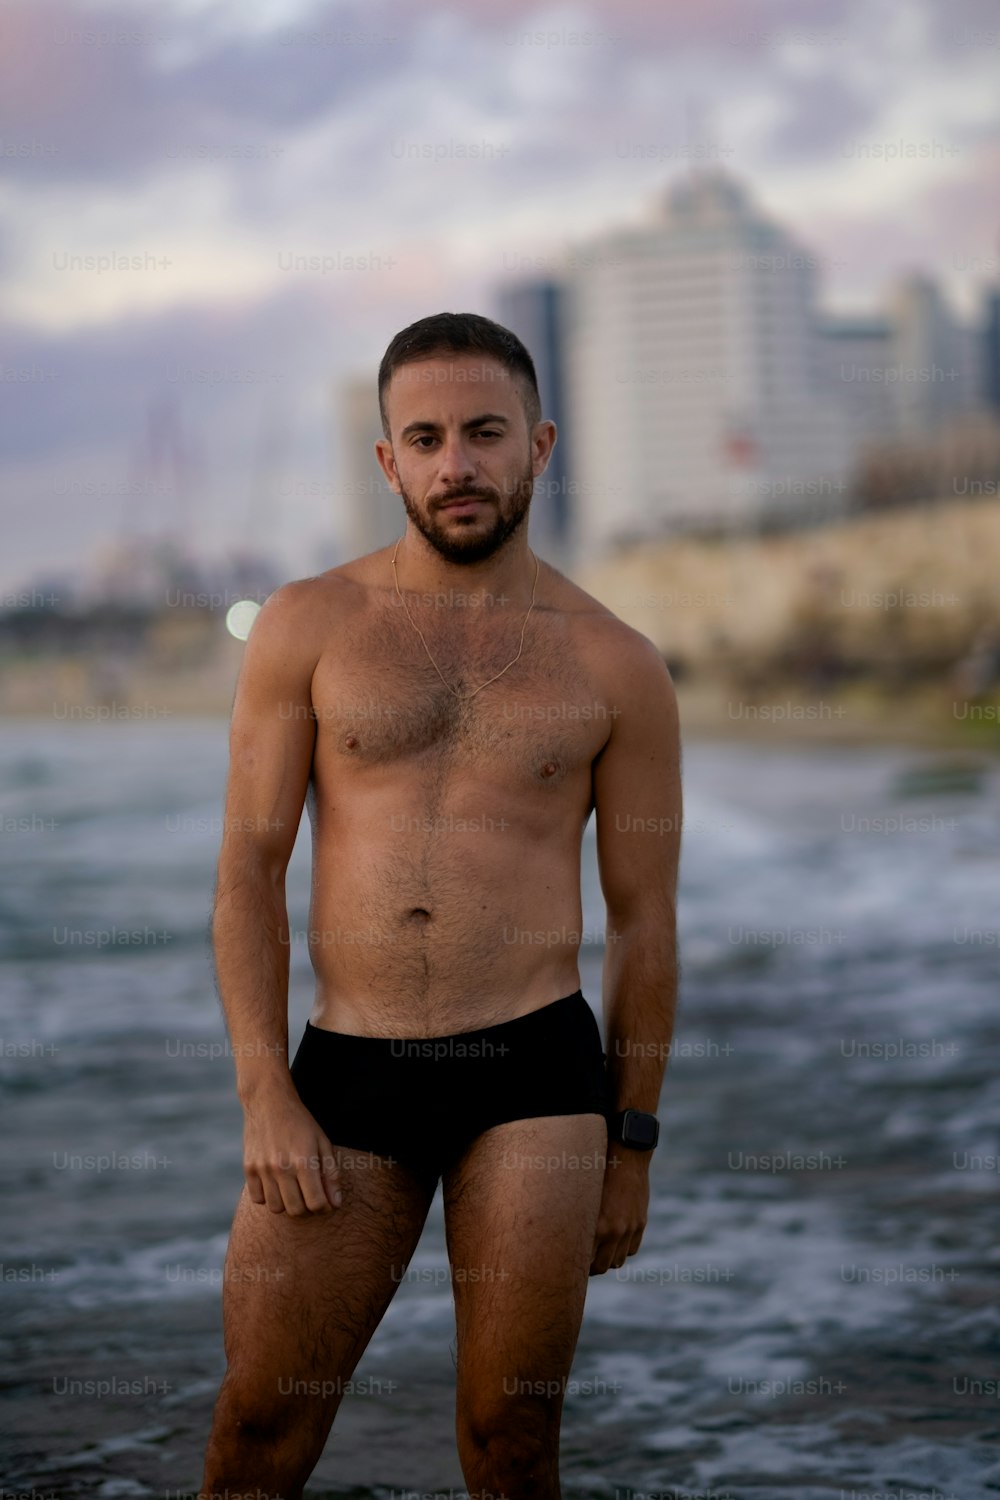 Un uomo a torso nudo in piedi nell'acqua di fronte a una città